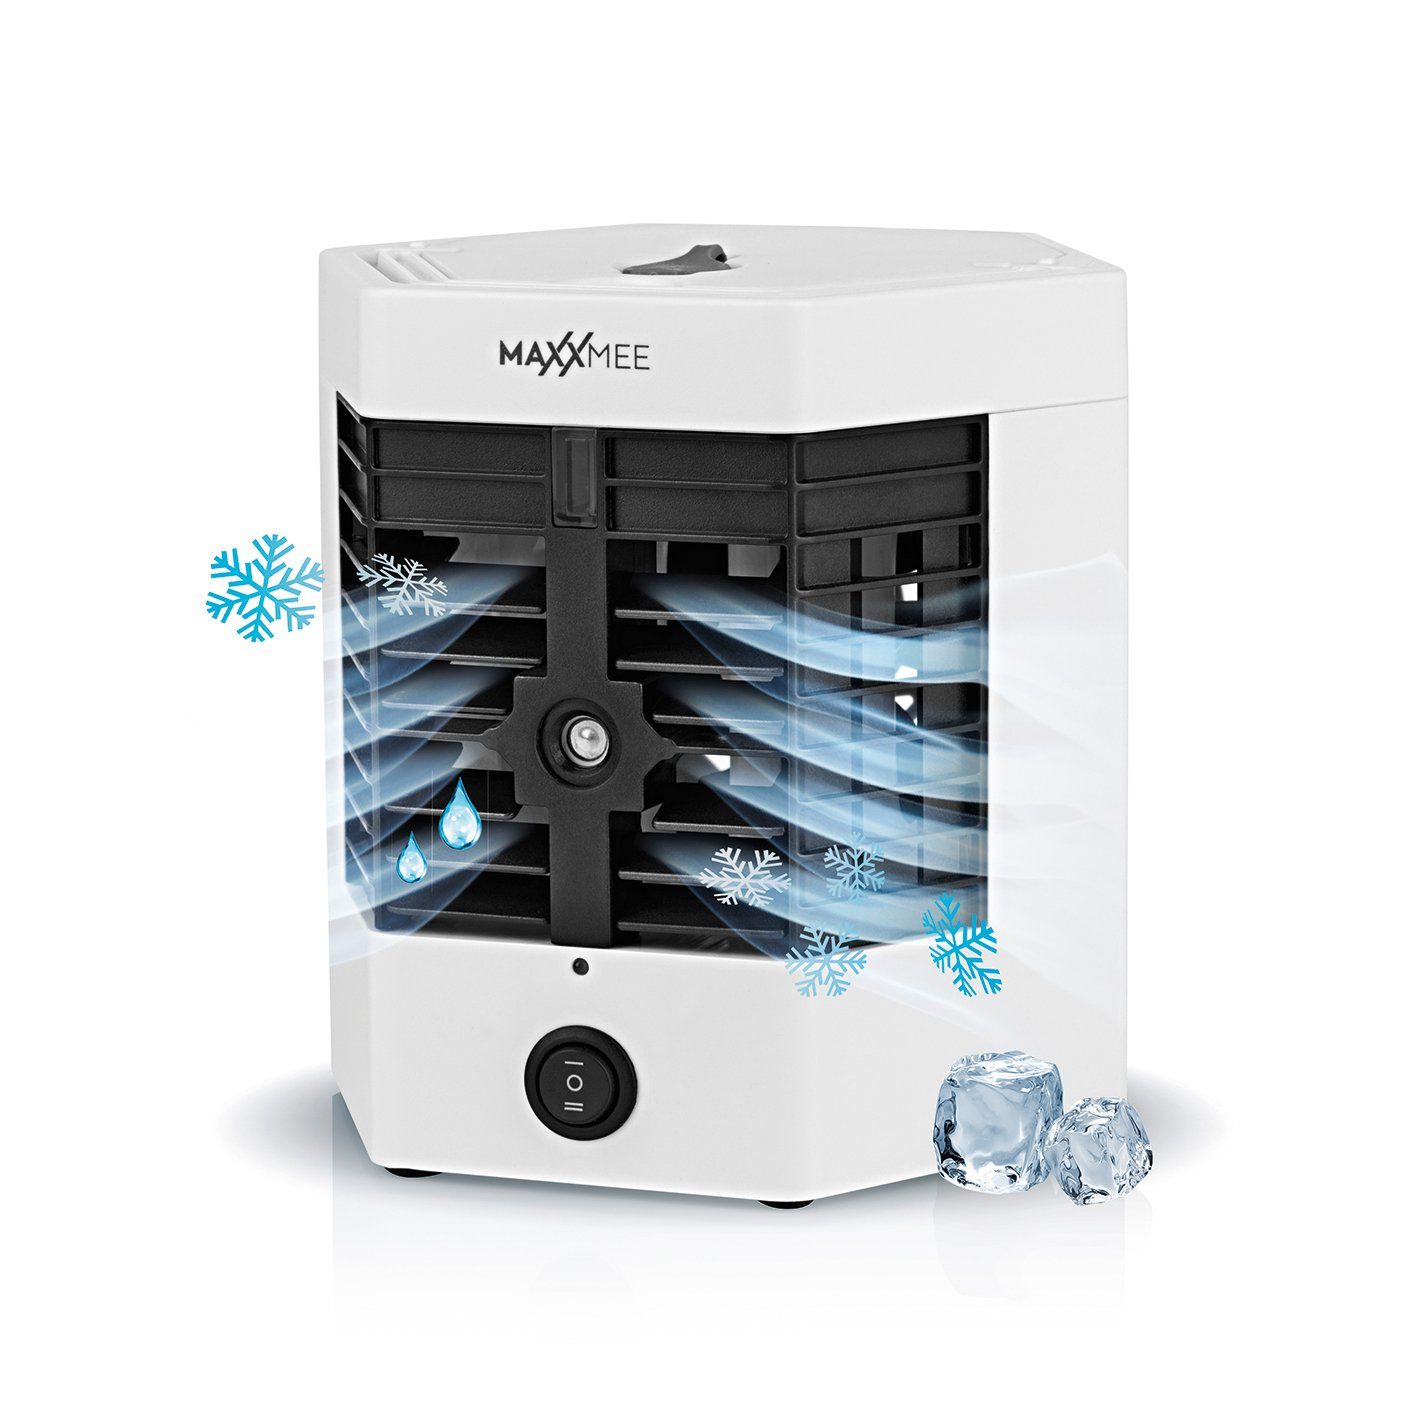 MAXXMEE Luftbefeuchter Luftkühler mit Befeuchtung - 4 Watt, Ventilator  Befeuchtung Klimaanlage Klimagerät Mobile Timer